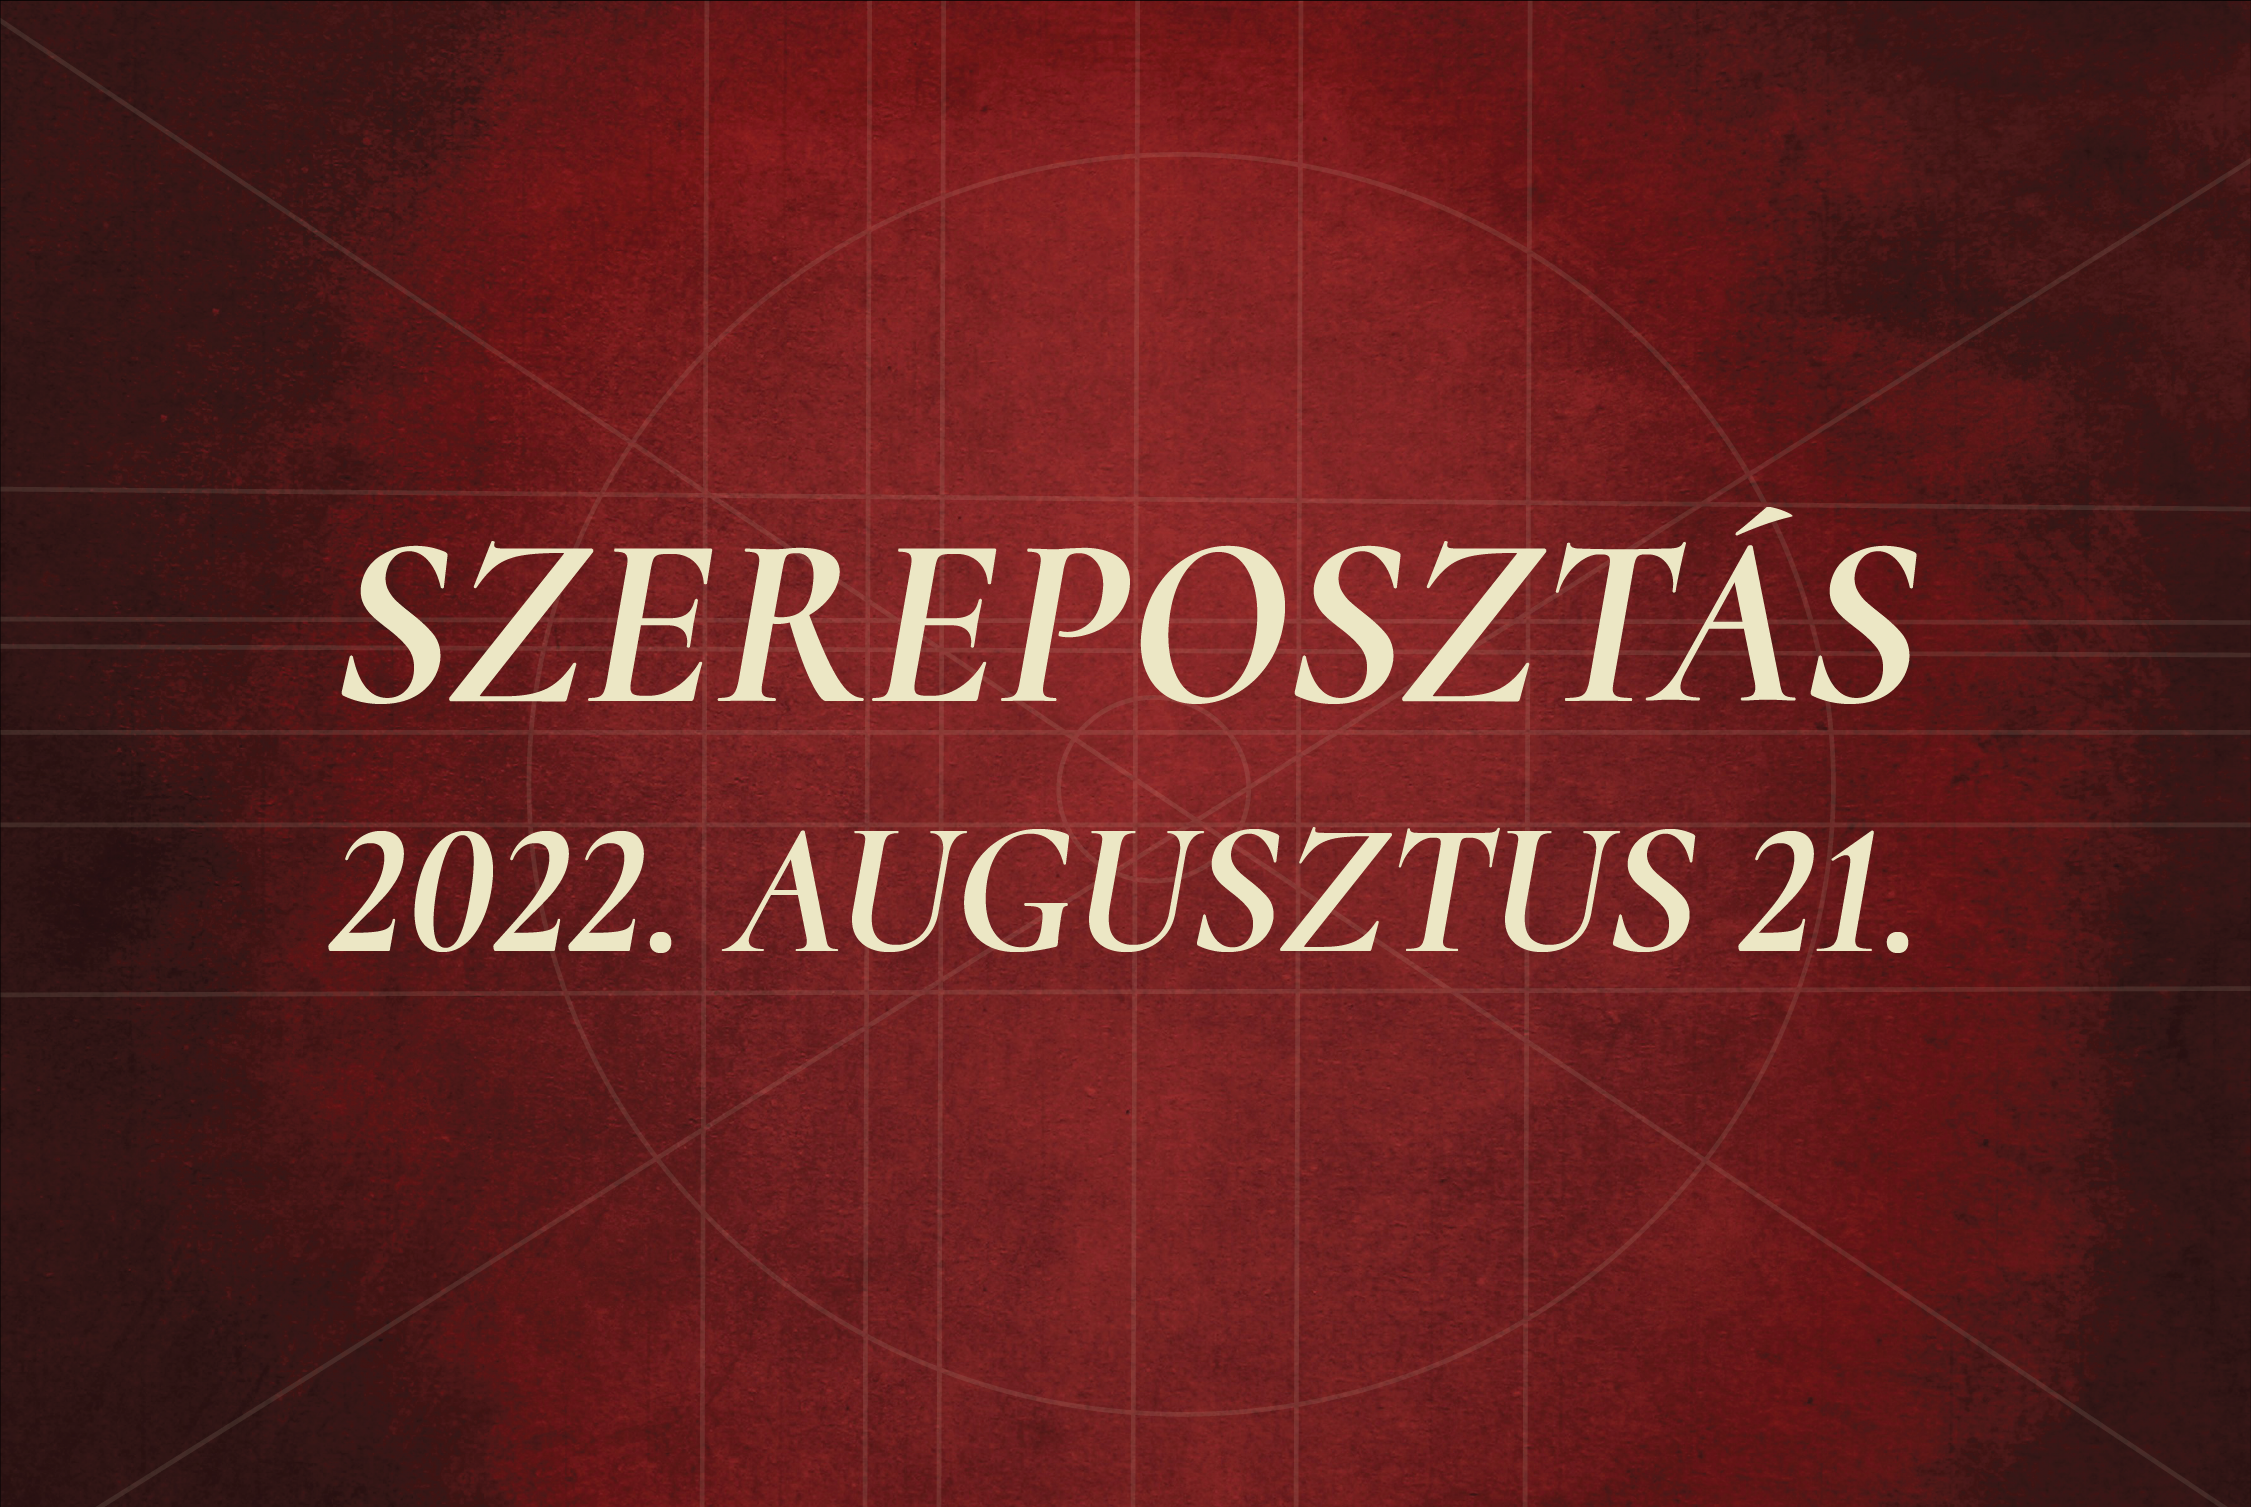 Szereposztás / 2022.08.21.